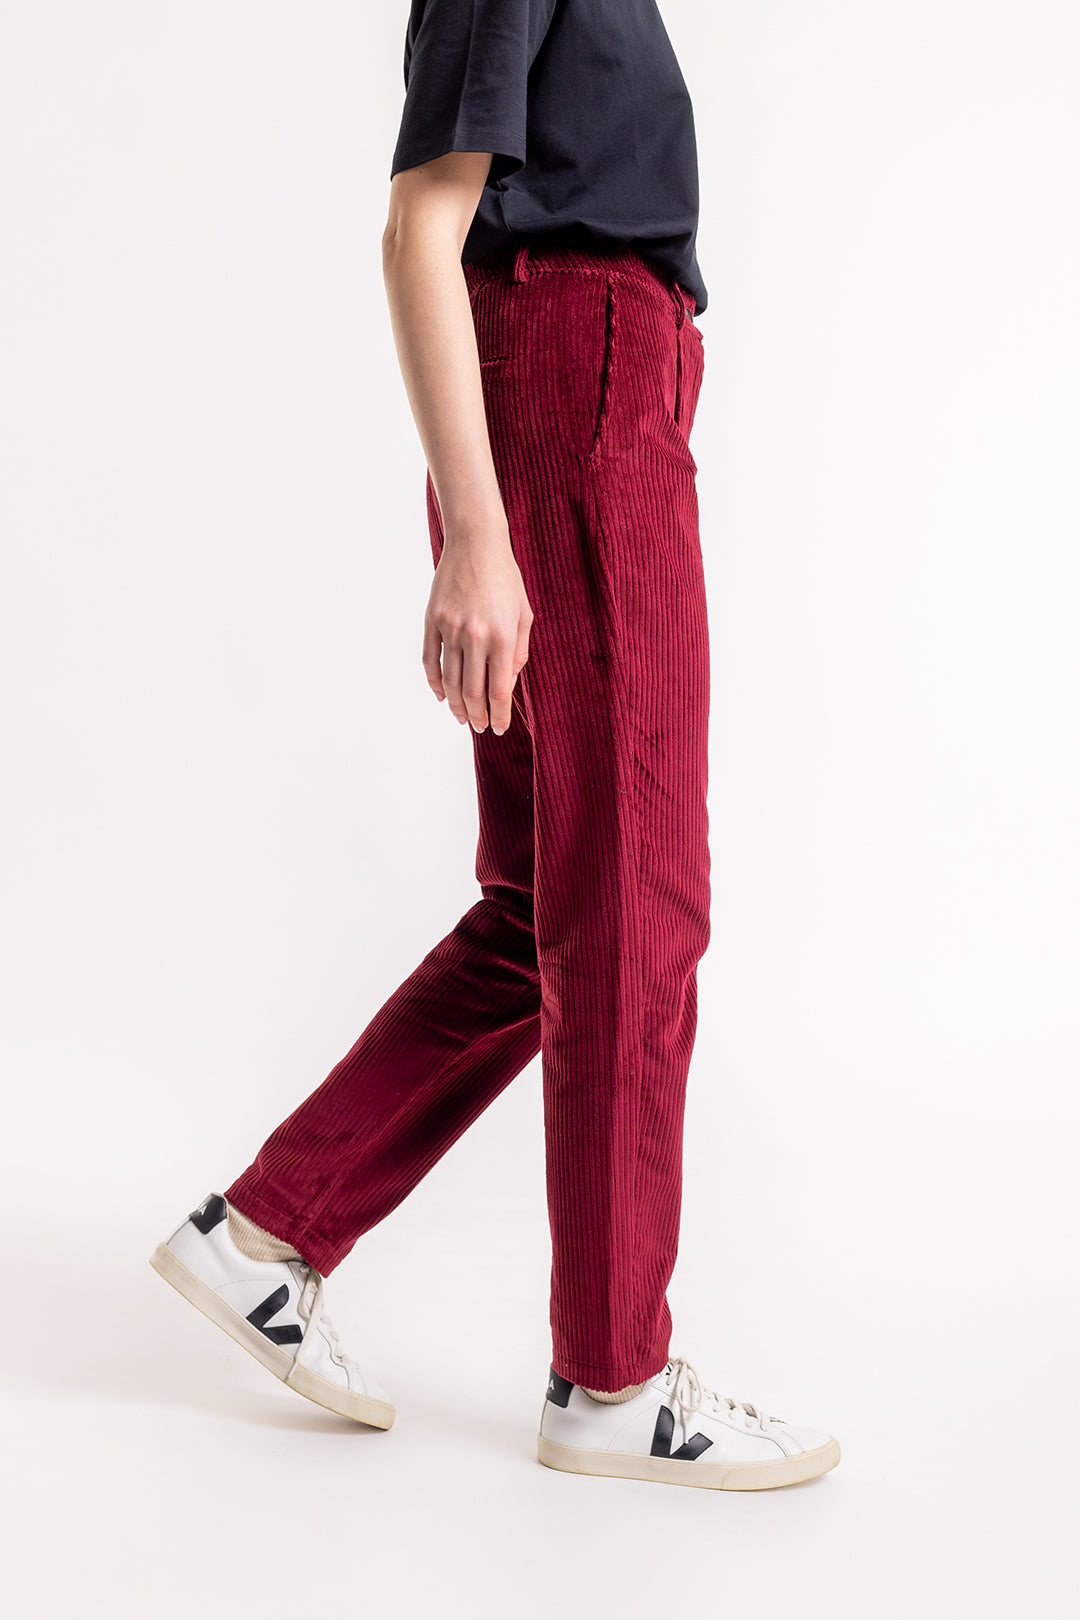 Pantalon velours côtelé bio rouge vin